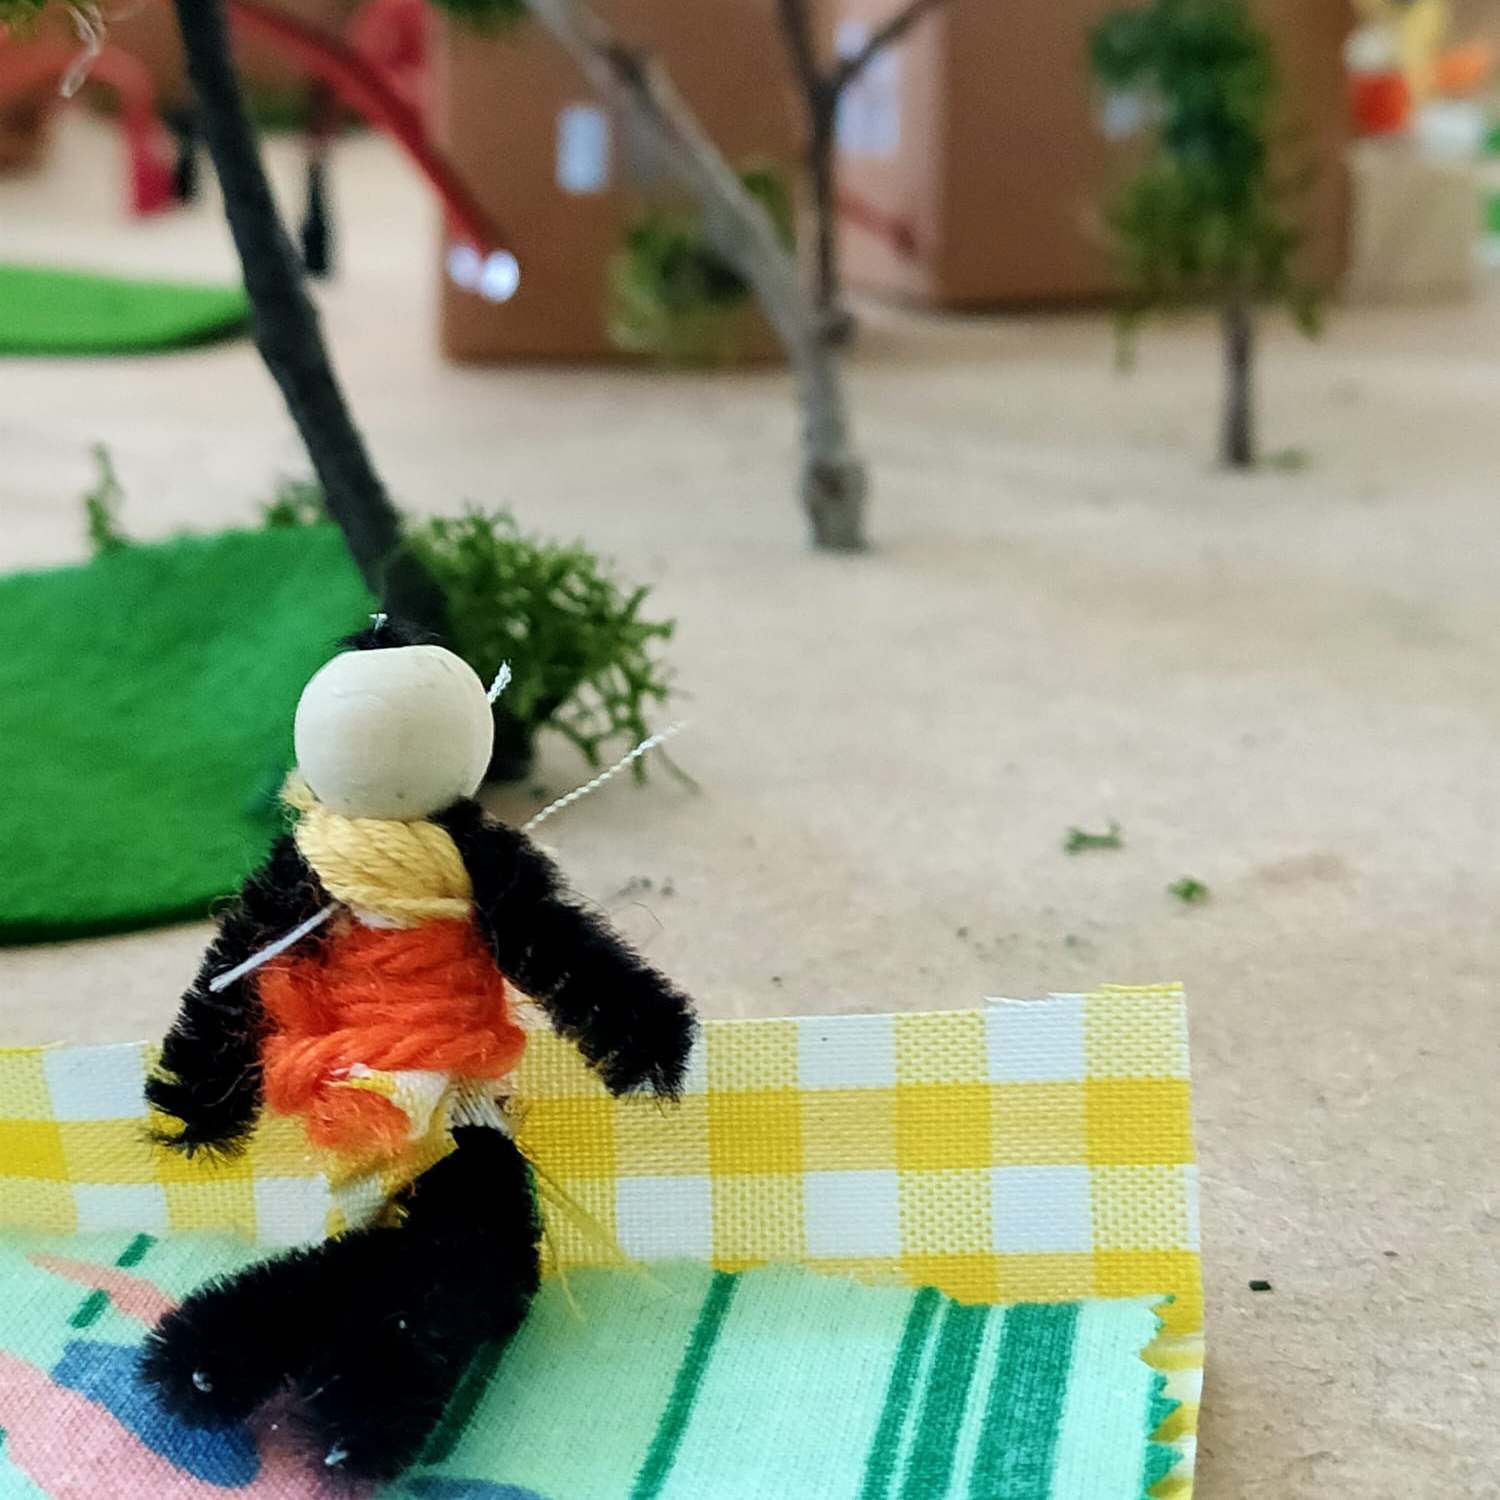 Vista detalle. En primer plano, un muñeco de trapo con figura humana sentado en el suelo sobre una manta de picnic. A su alrededor, árboles y casas de cartón.